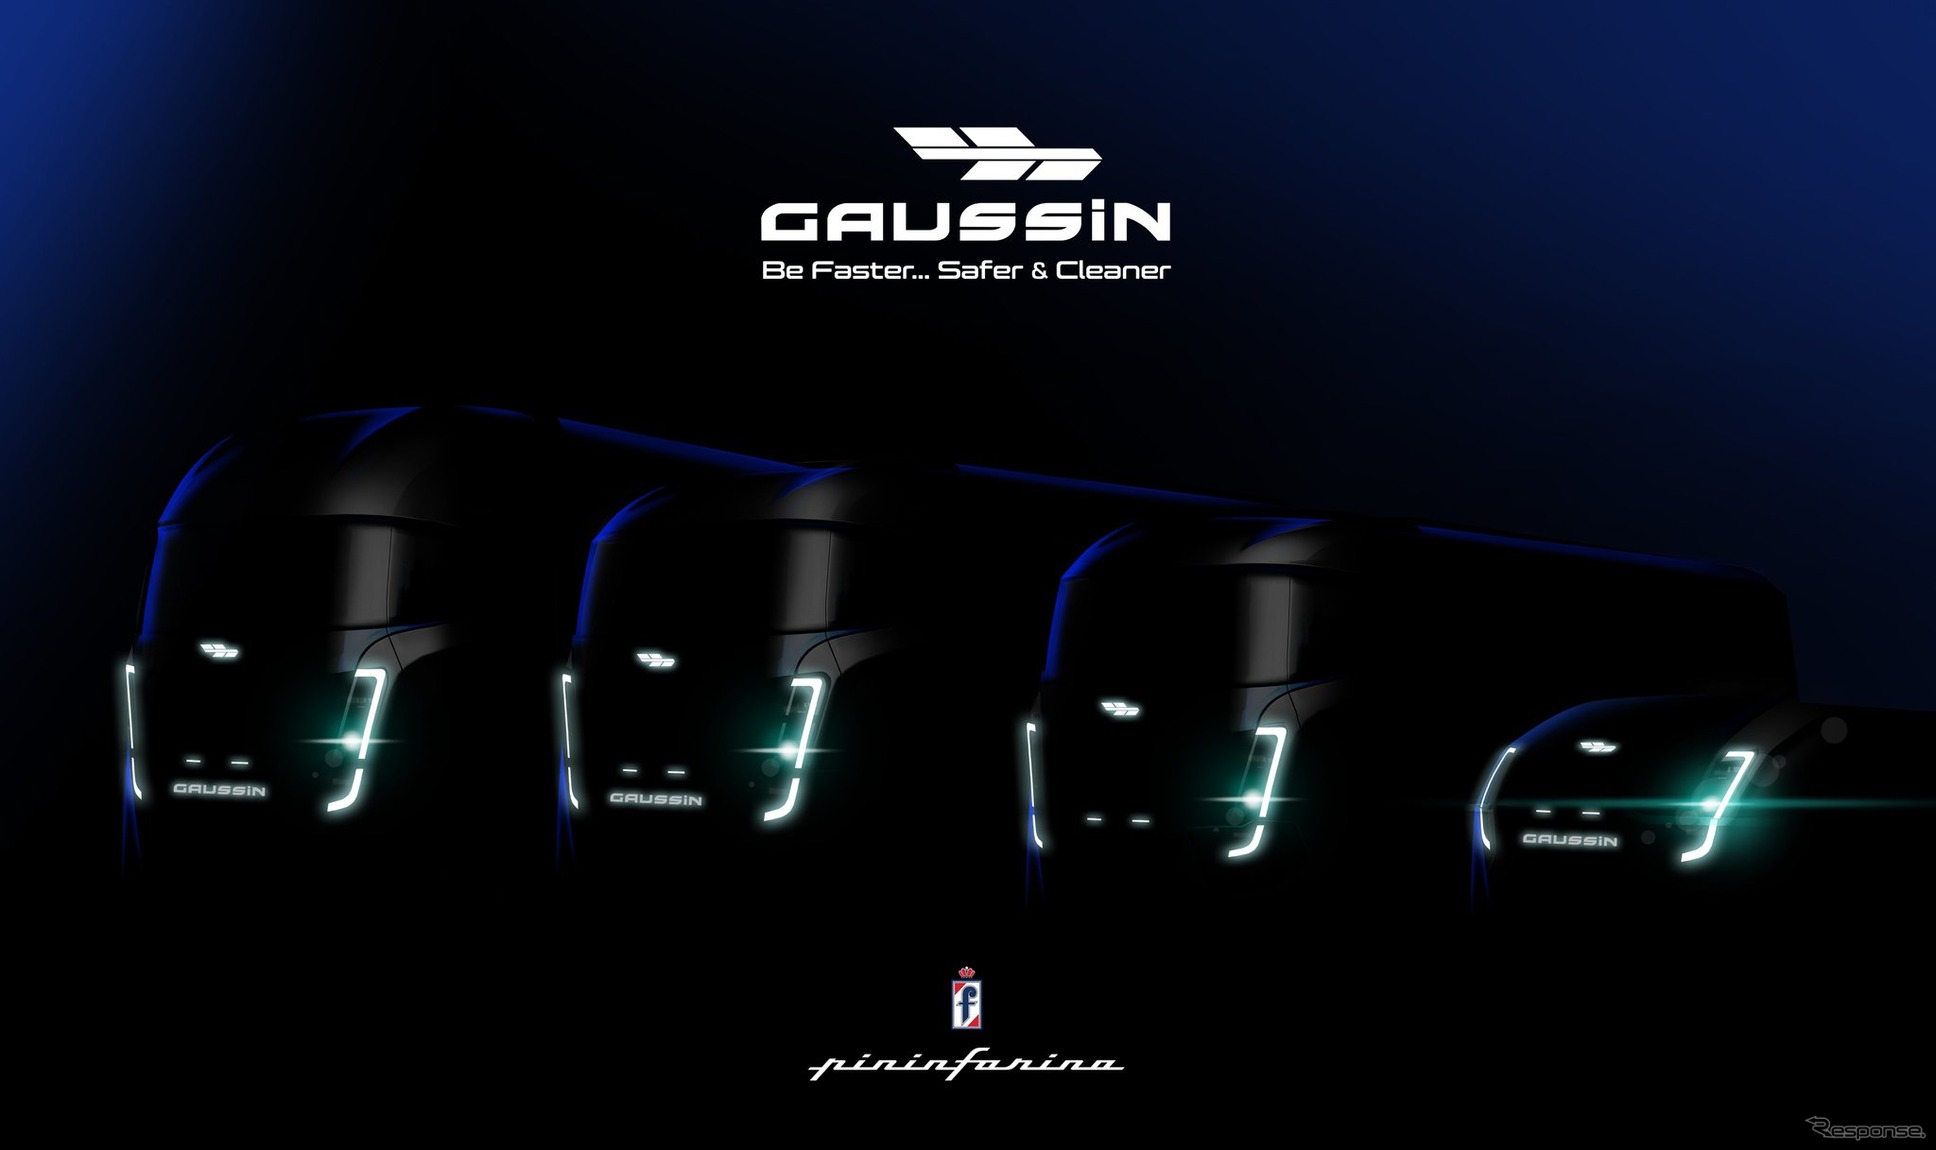 ピニンファリーナがデザインするゴサンの新型水素燃料電池トラックのティザーイメージ